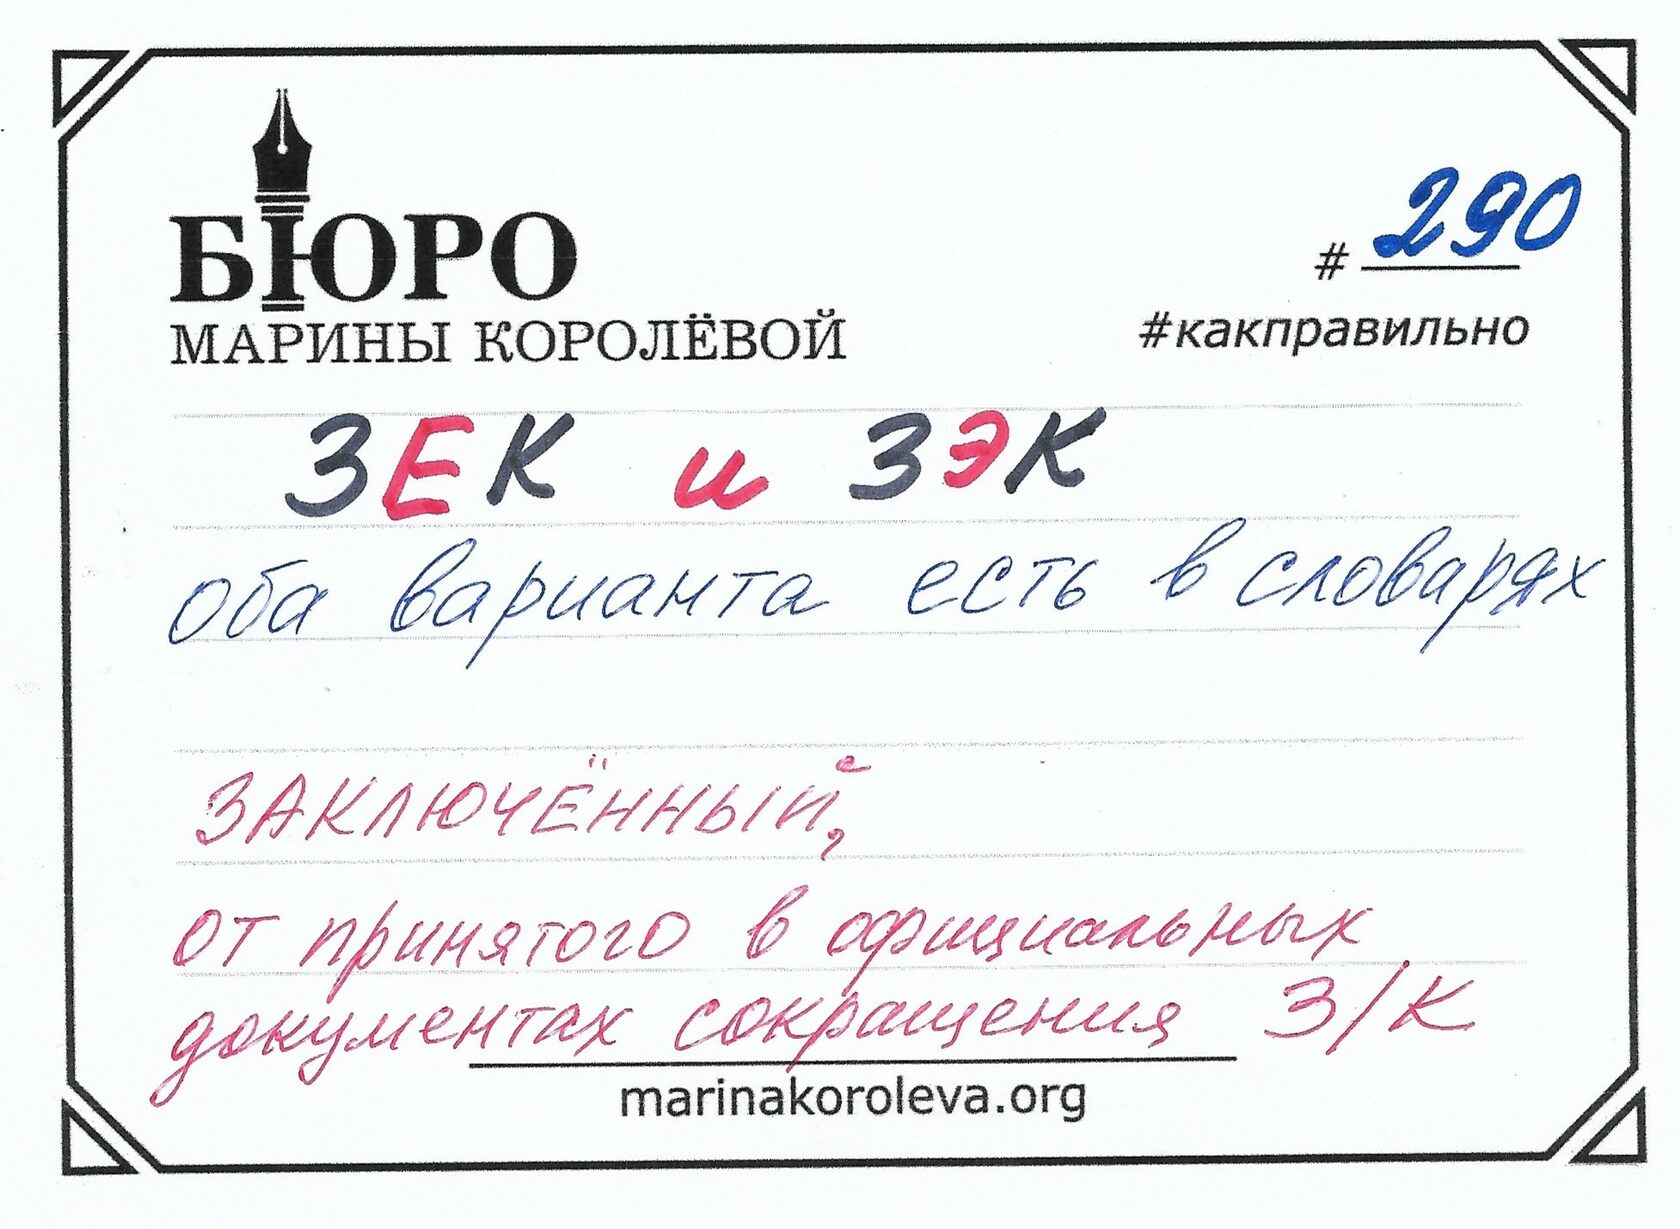 Шрифт для телеграмма русский фото 92